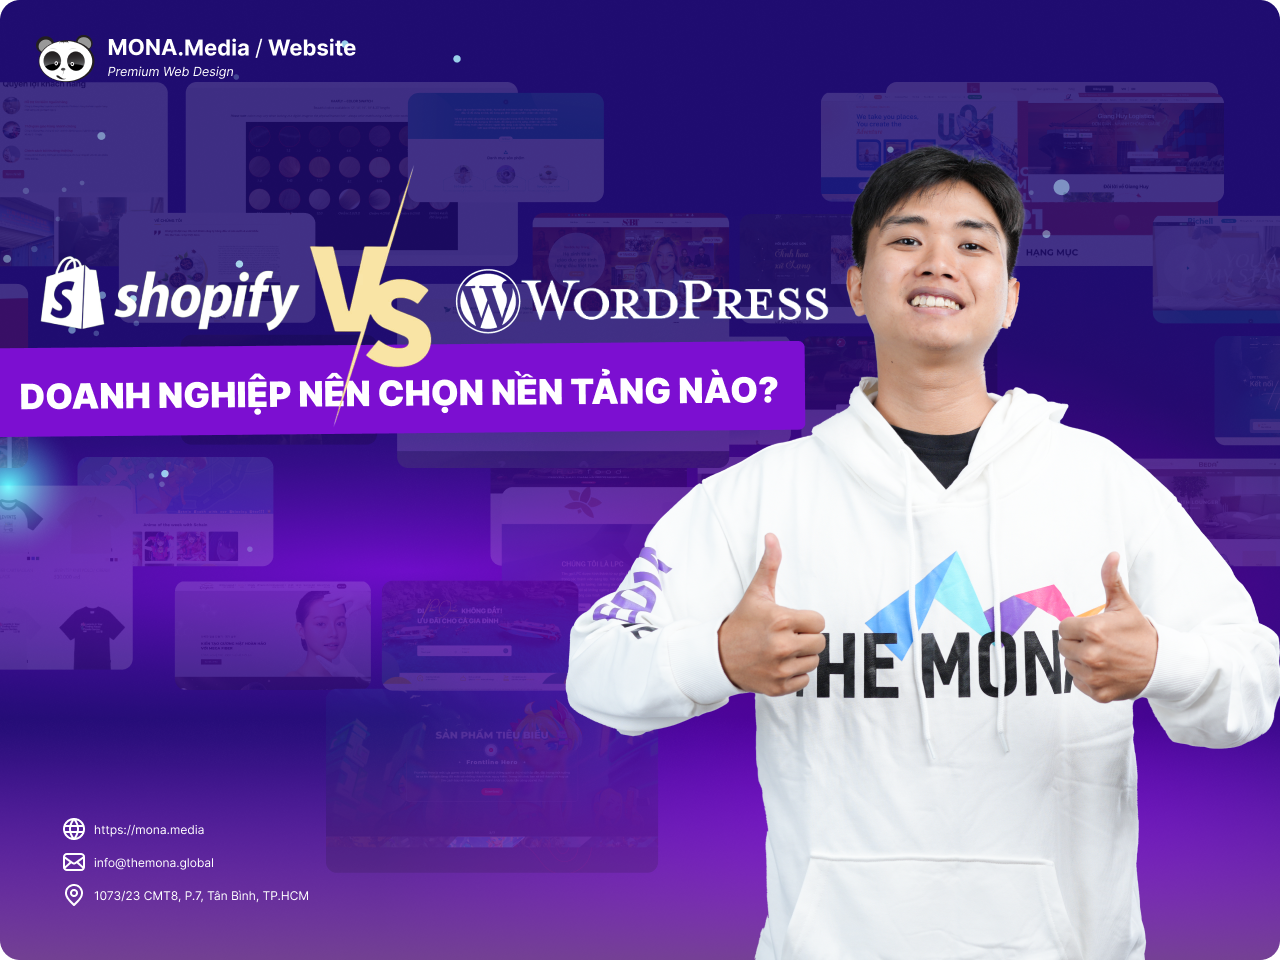 Shopify và WordPress - Nền tảng nào phù hợp với doanh nghiệp?